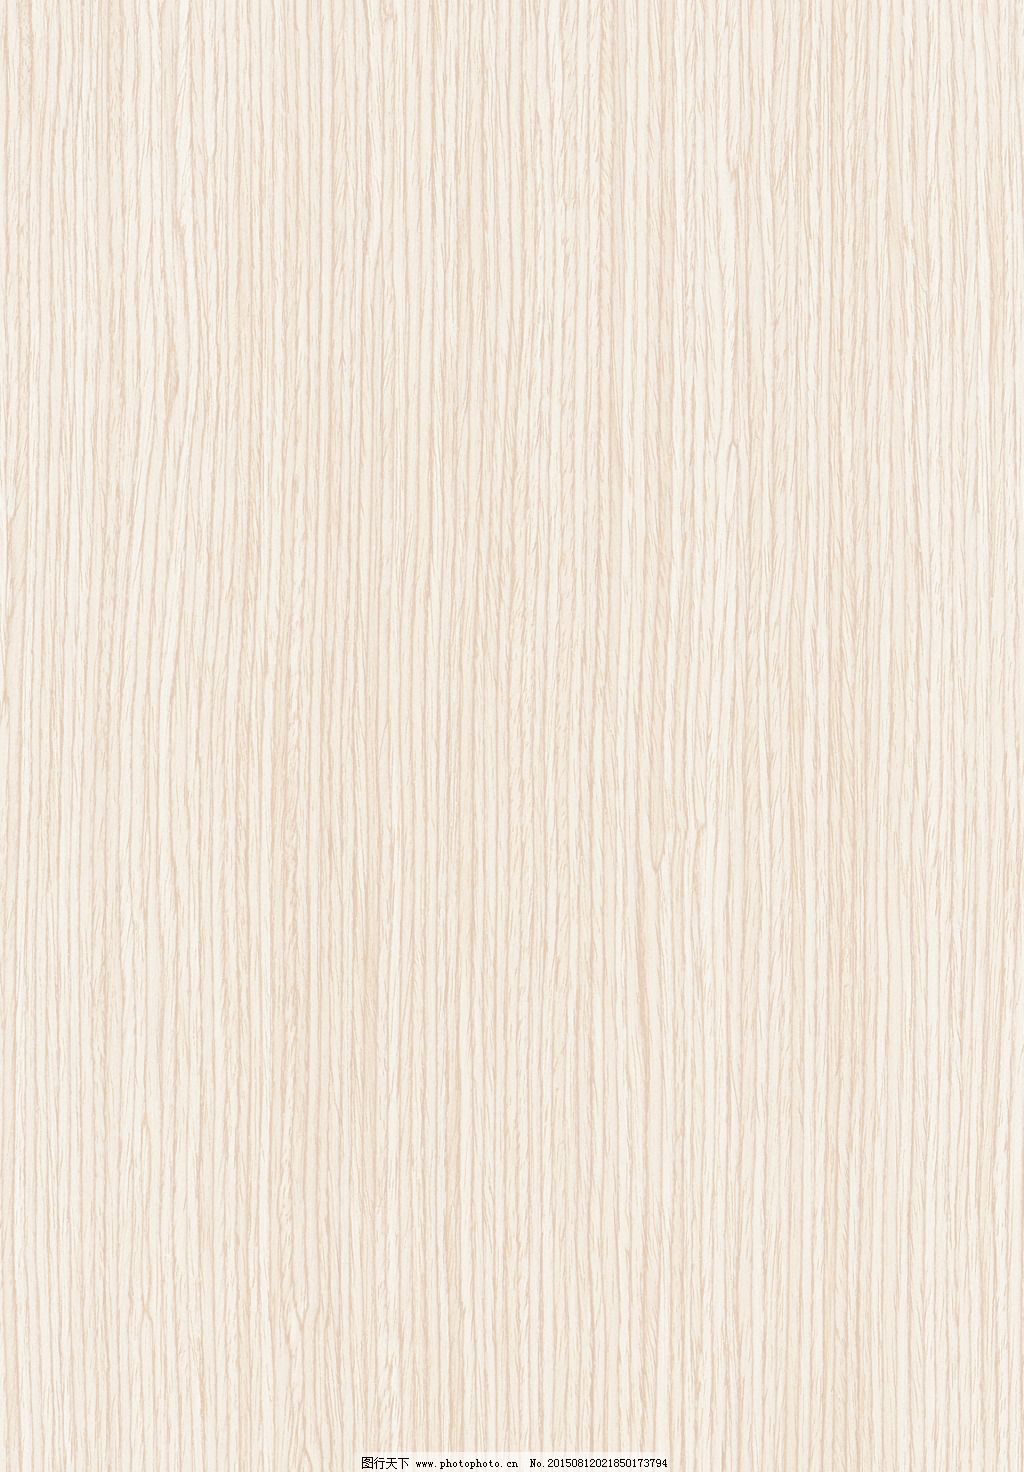 白色经典白橡木塗装木皮图片 背景素材 高清素材 图行天下素材网